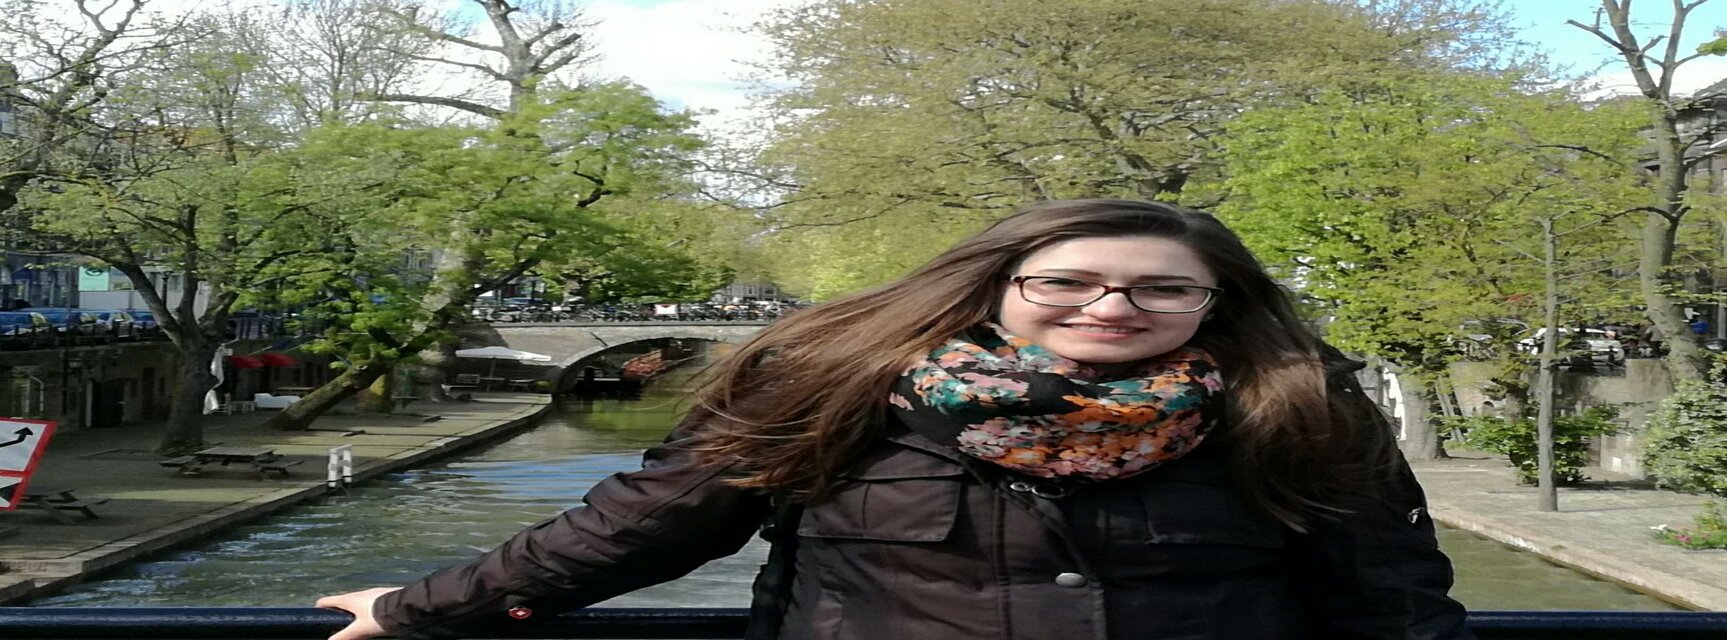 Elena in Netherlands